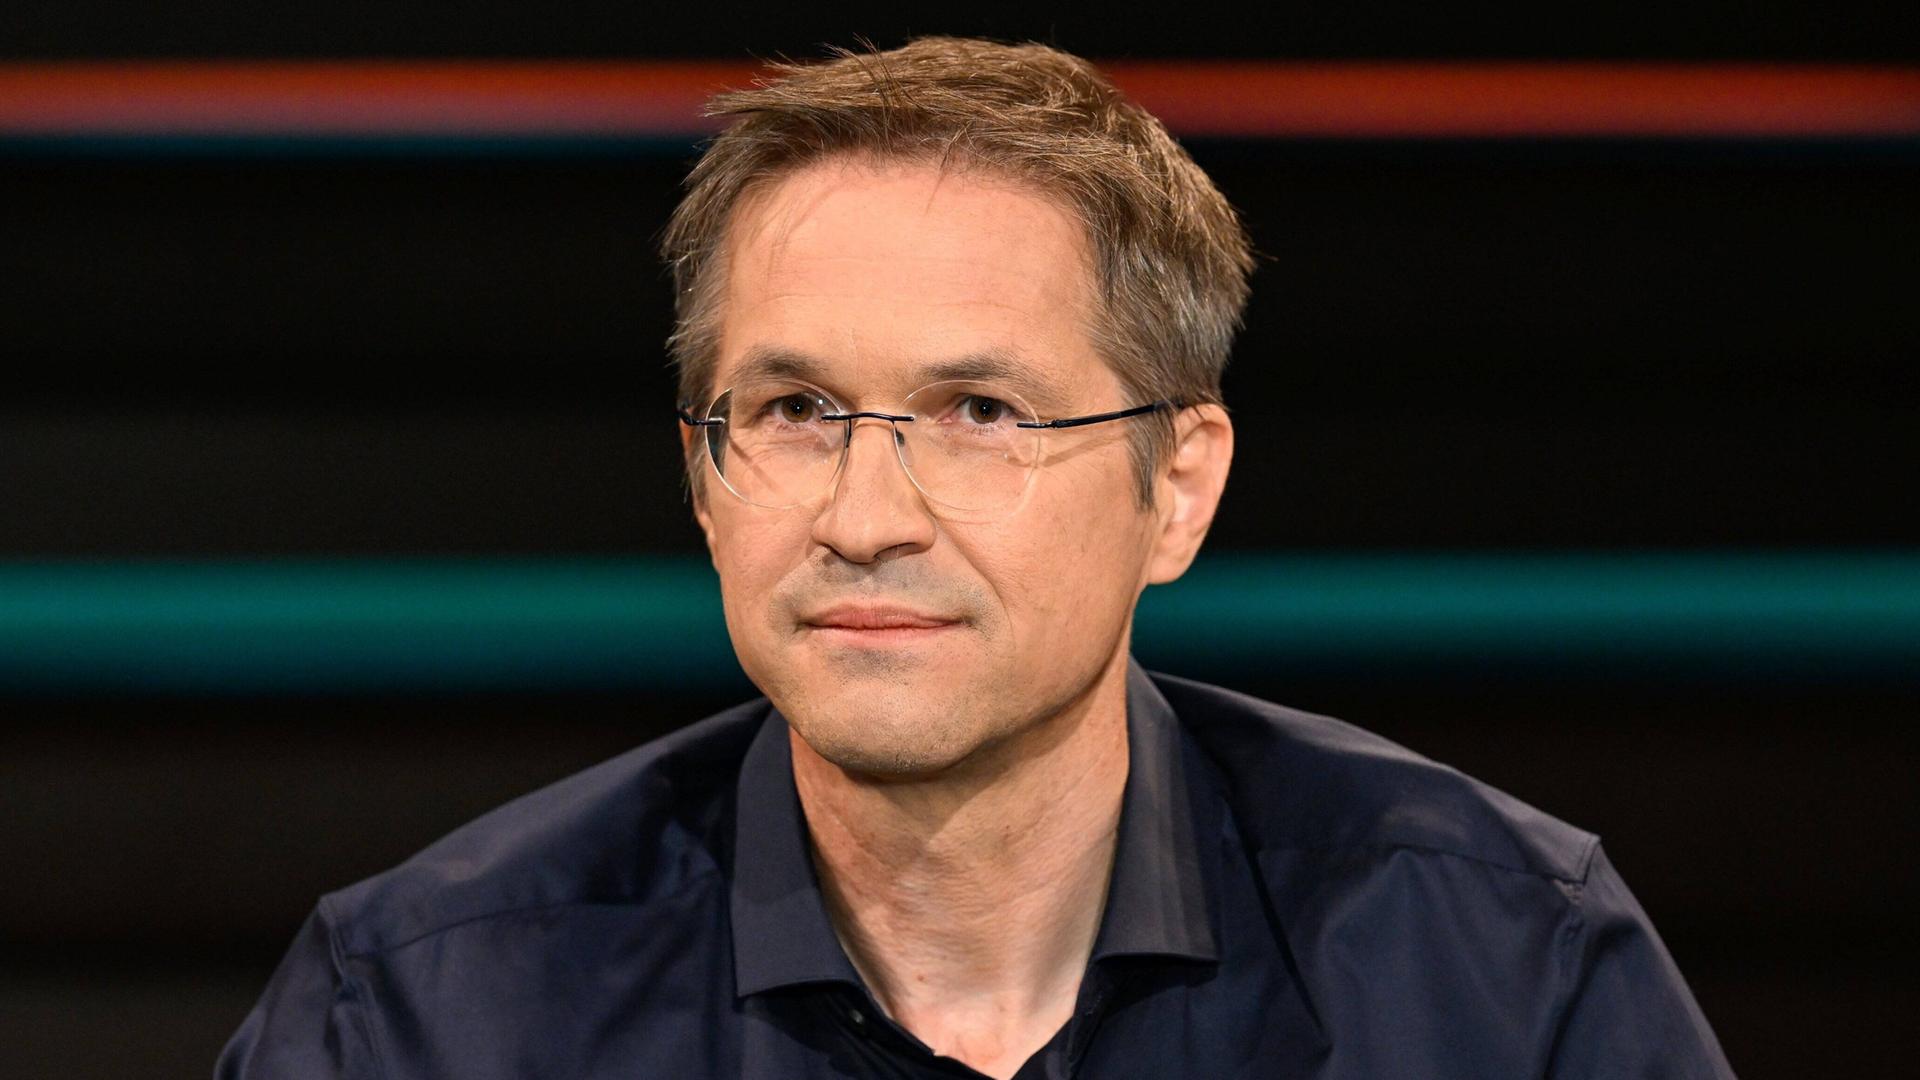 Gerald Knaus (Soziologe) im Interview am 24. Mai 2022 im Studio der ZDF Sendung "Lanz".